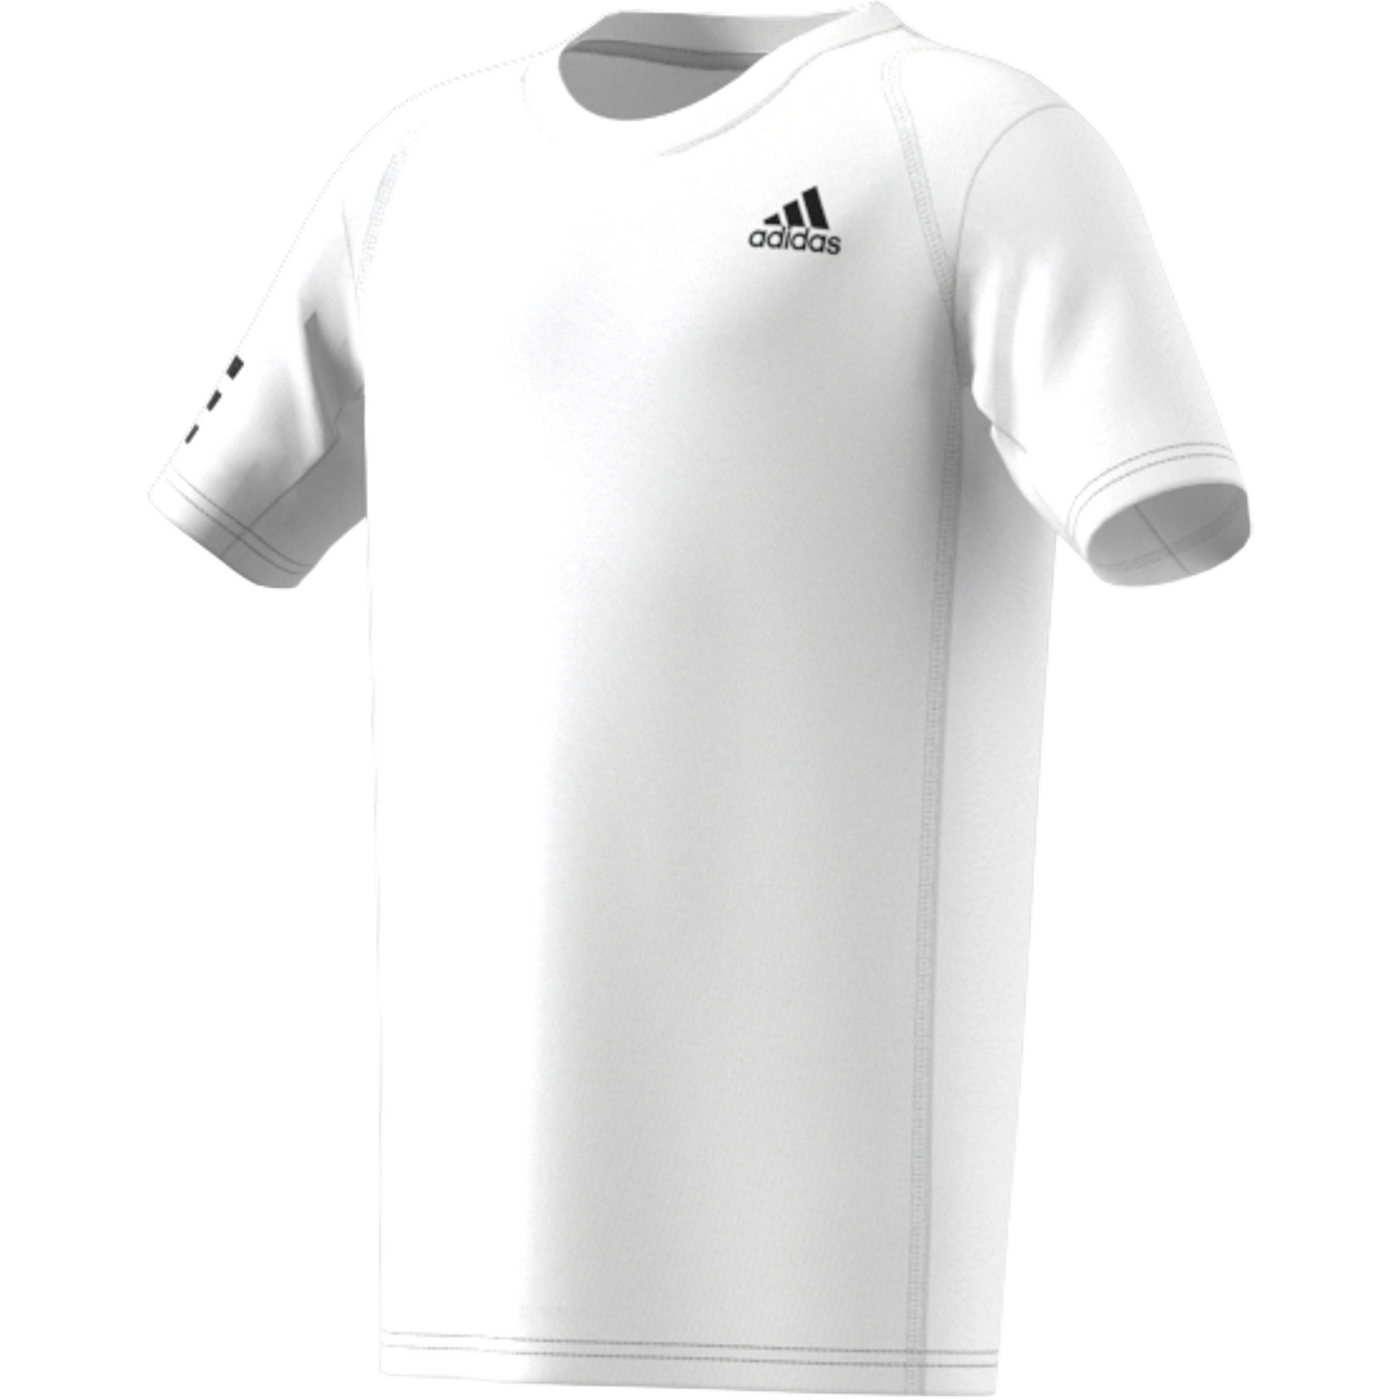 Adidas Boy Club 3-Stripe Tennis T-Shirt - White/Black